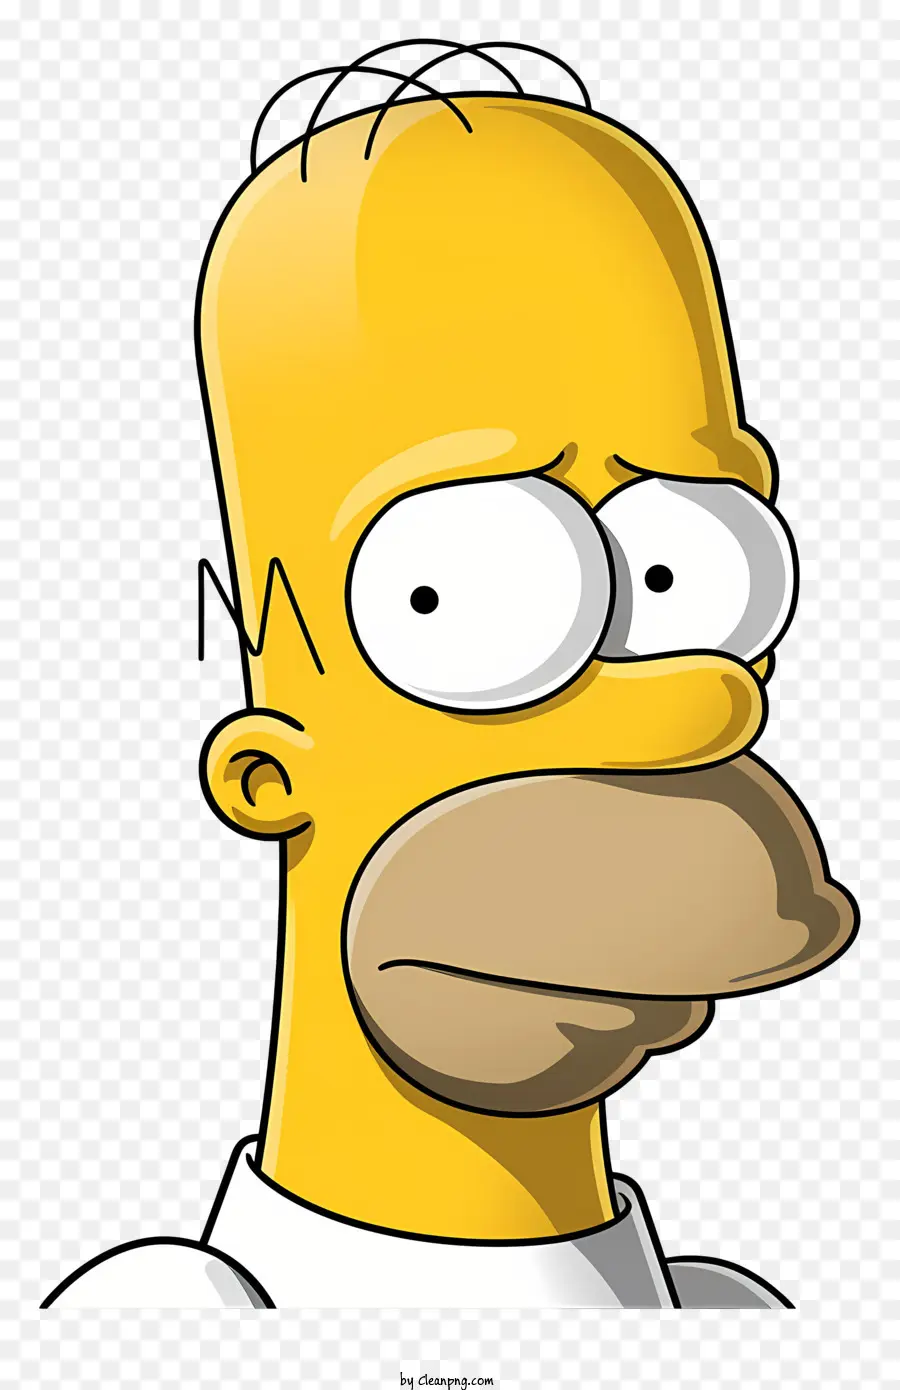 Homer Simpson - Miêu tả nghiệp dư của Homer Simpson trông nghiêm túc